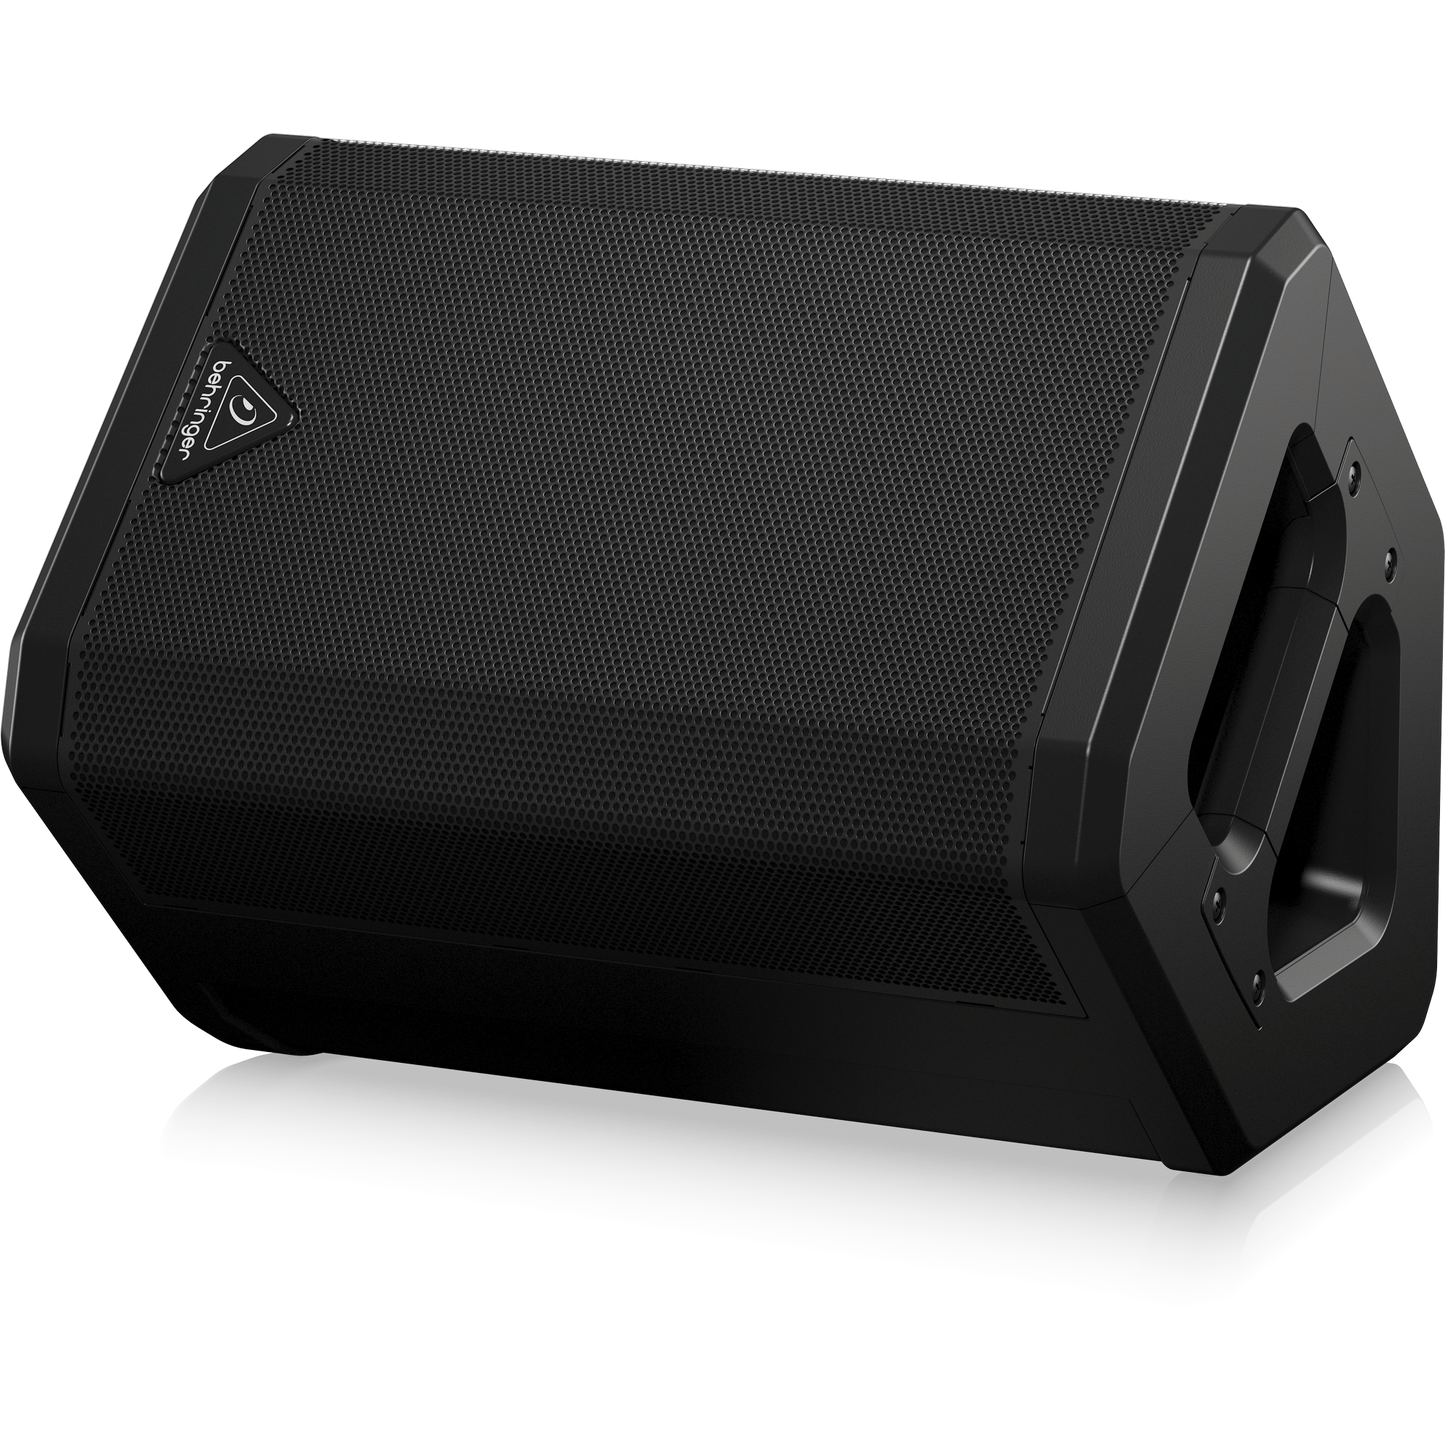 مكبر صوت محمول بهرينجر B1X 1x6.5 بوصة 250 وات مع تشغيل البطارية، خلاط رقمي، تأثيرات